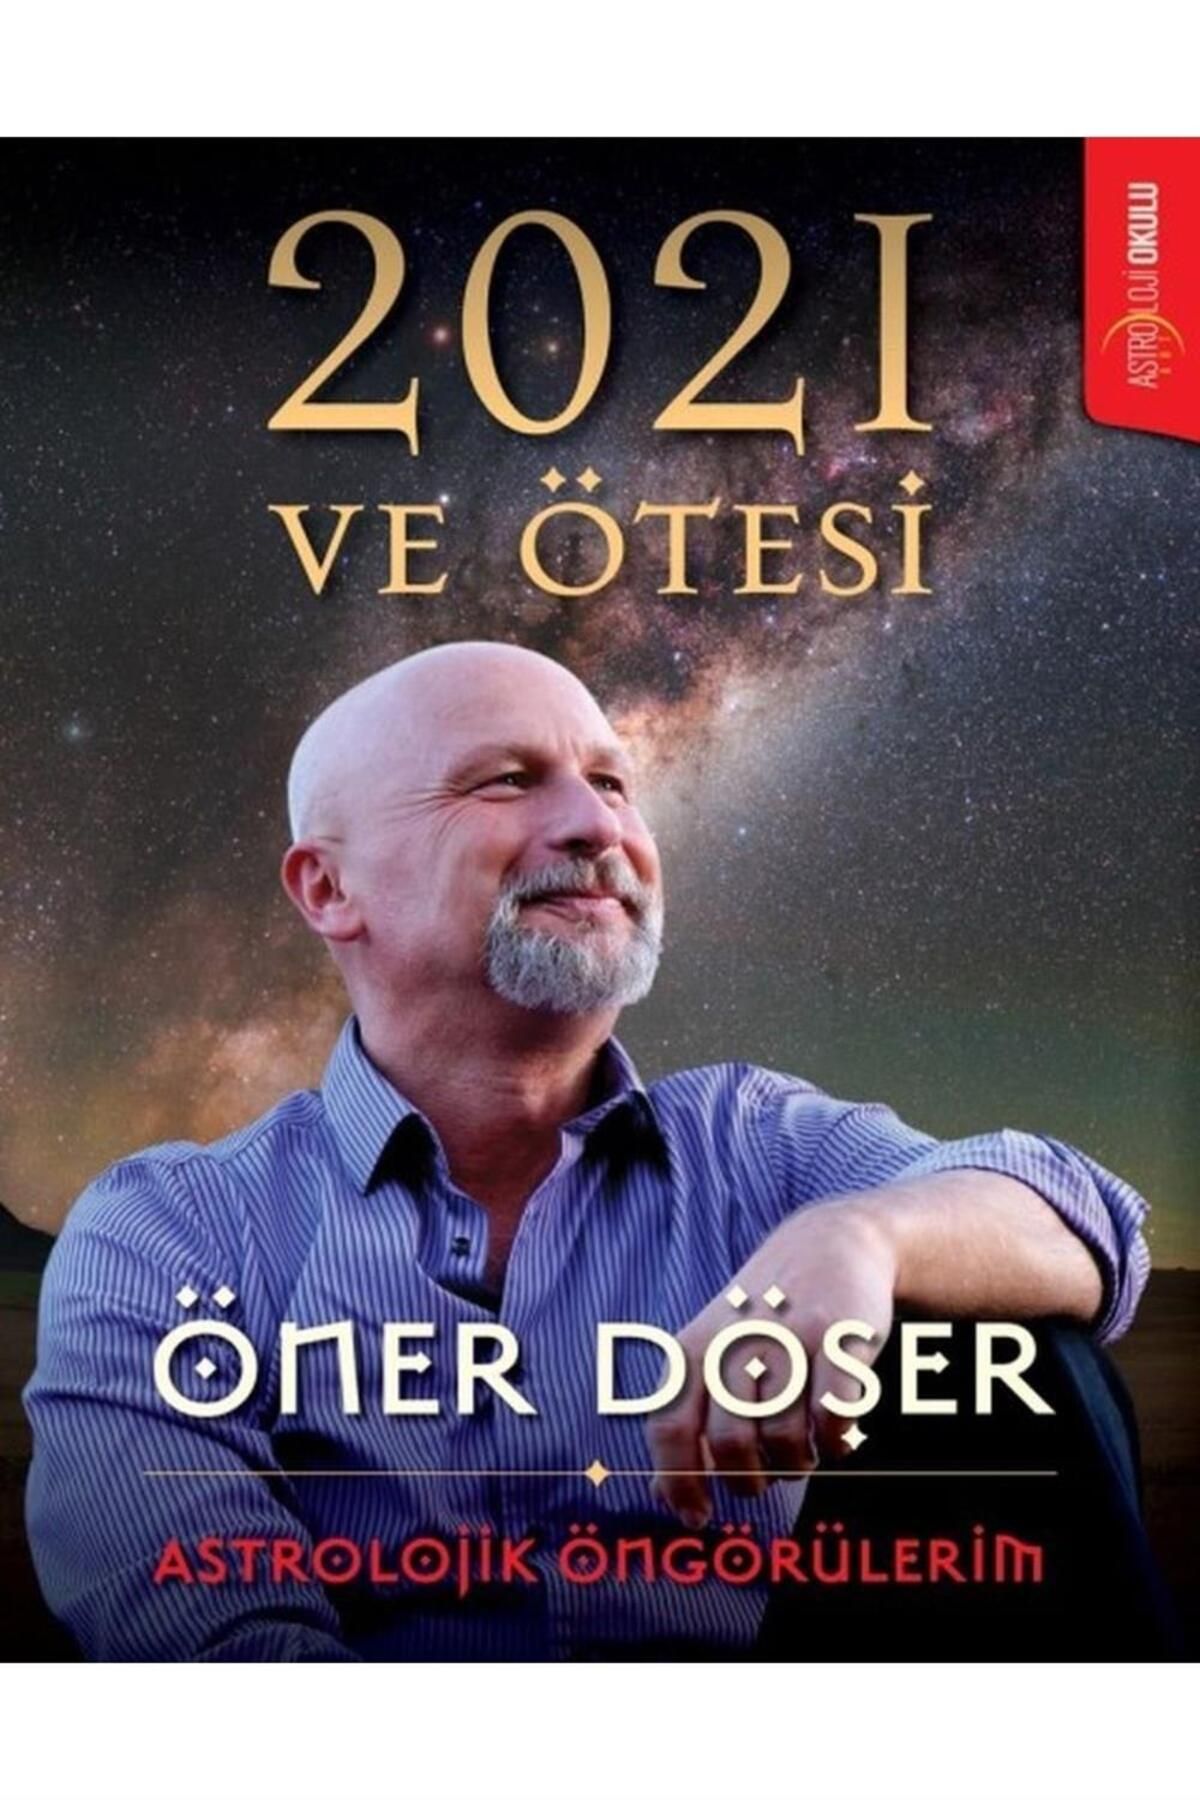 Astroloji Okulu Yayınları 2021 Ve Ötesi-astrolojik Öngörülerim